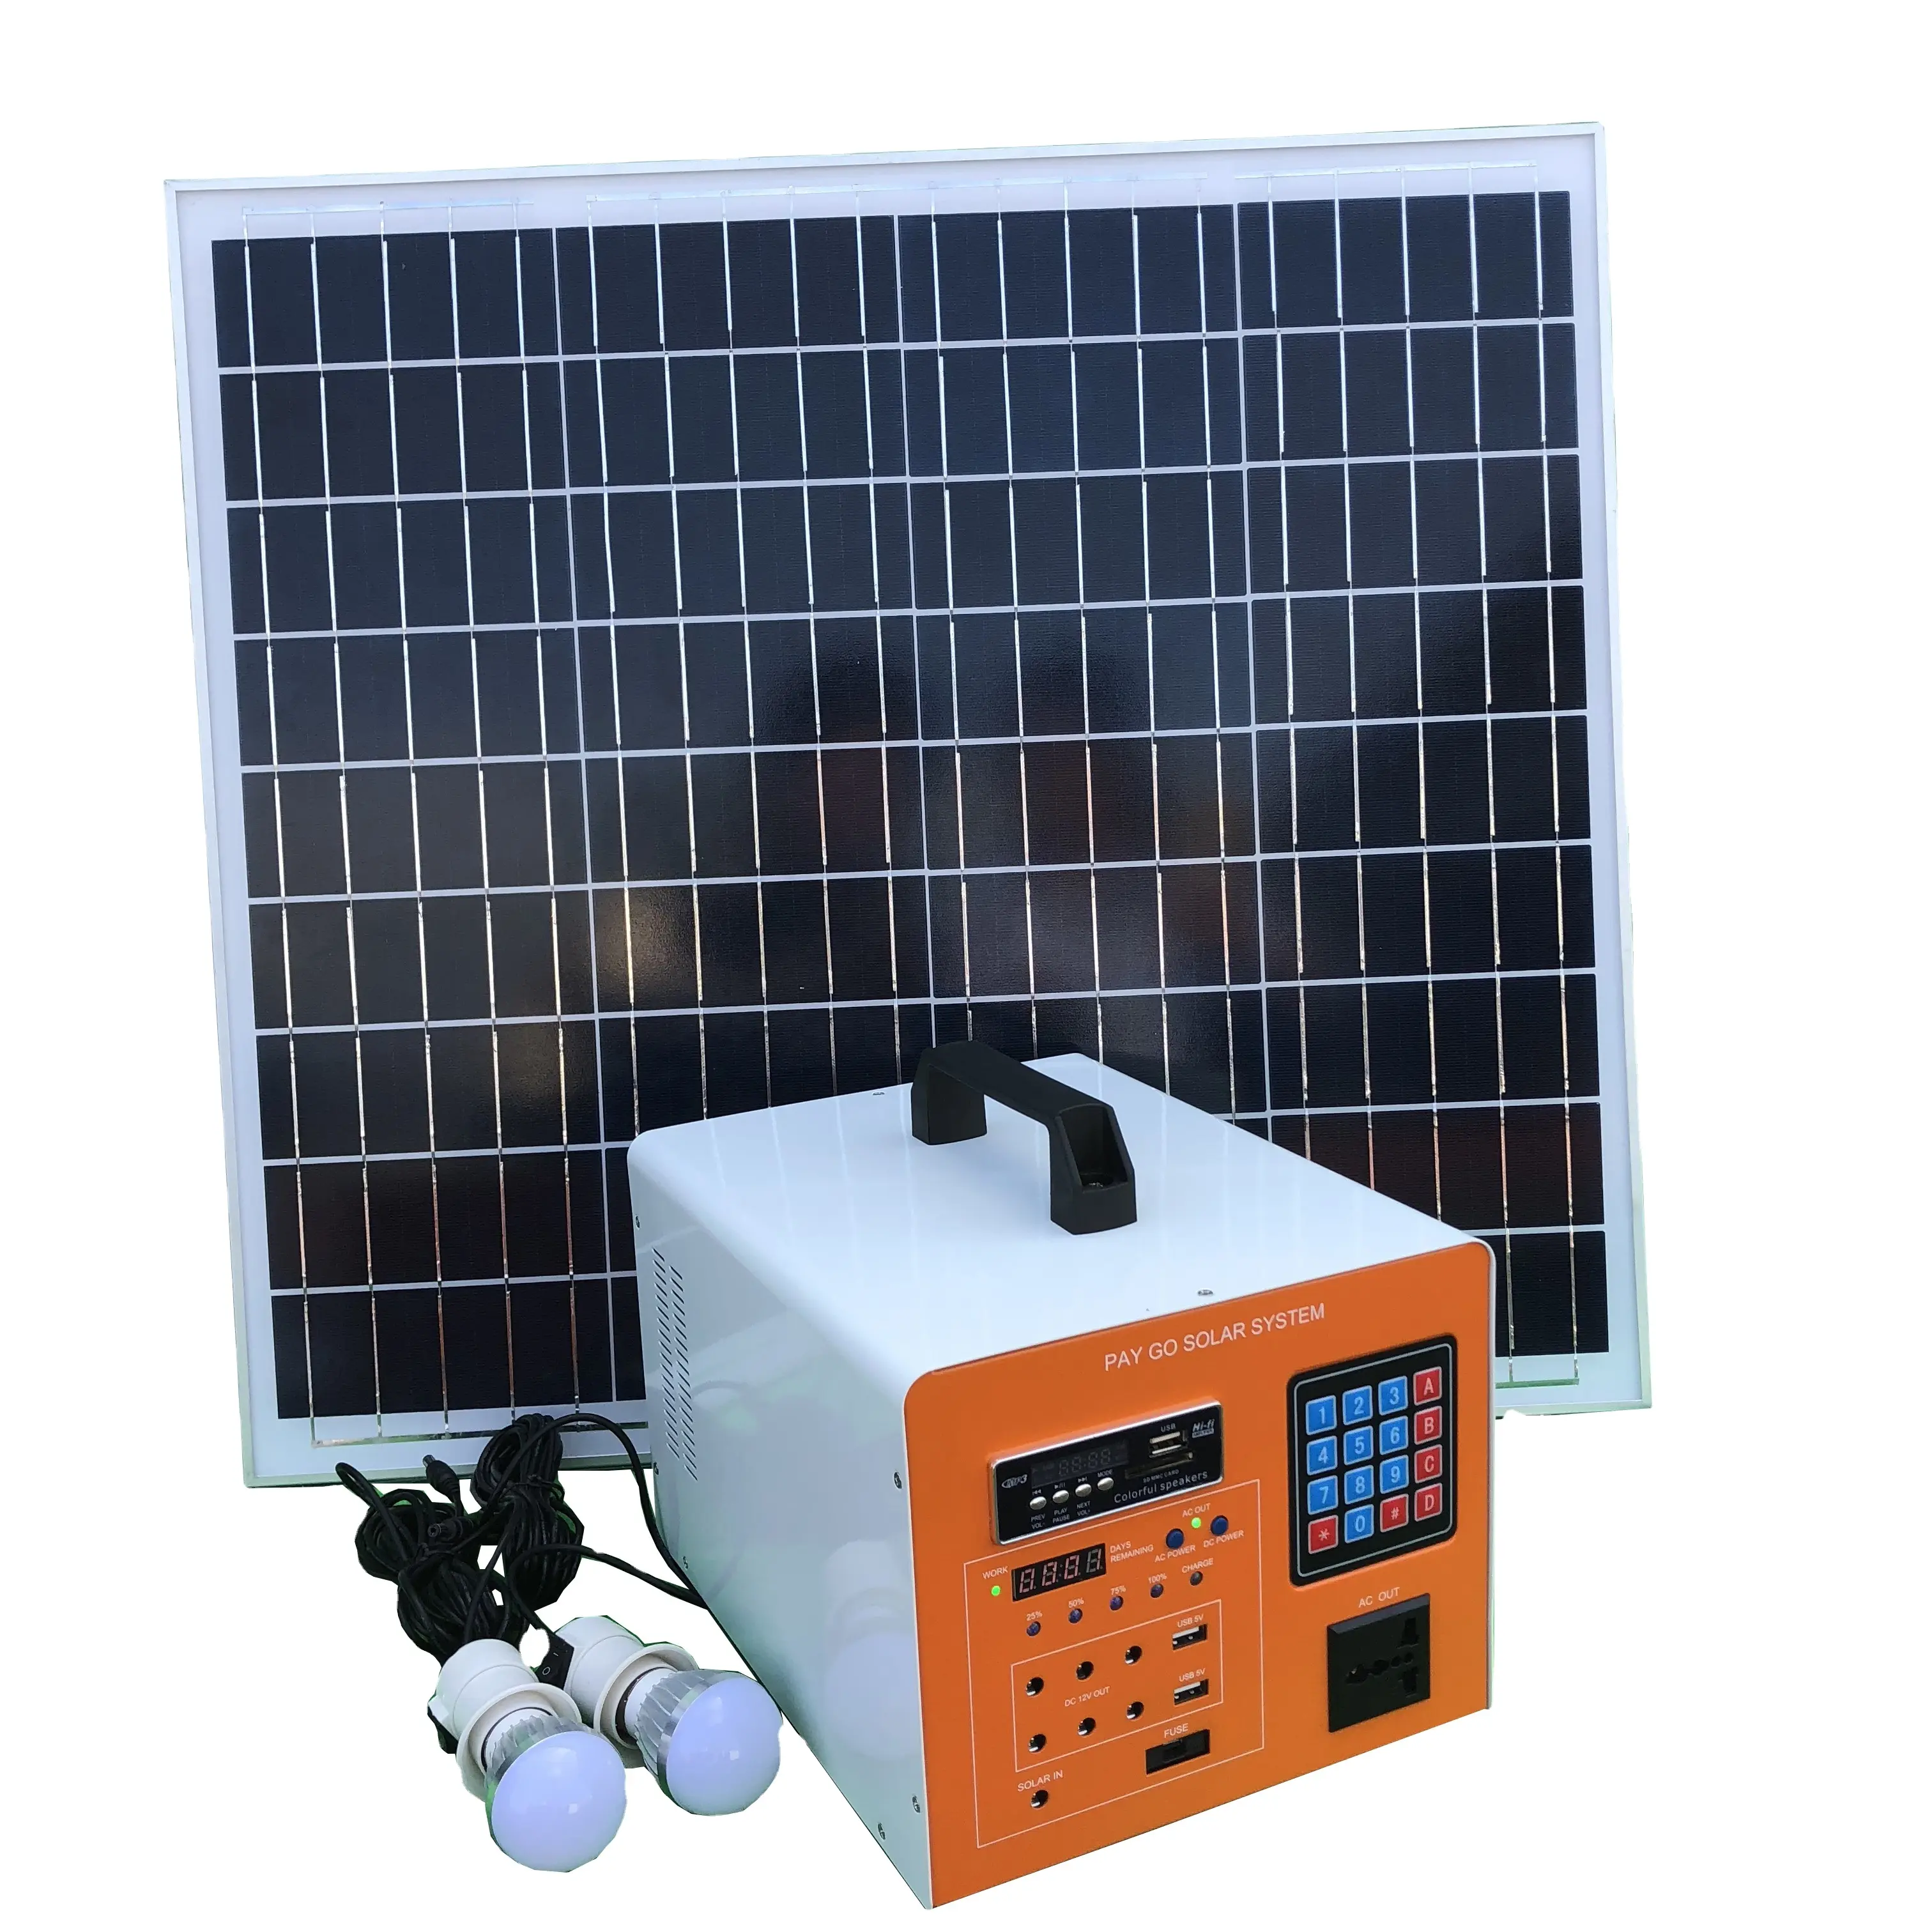 بسعر المصنع ، نظام توليد الطاقة الشمسية Paygo مع تلفزيون DC الكل في واحد لتخزين الطاقة الشمسية للمنزل